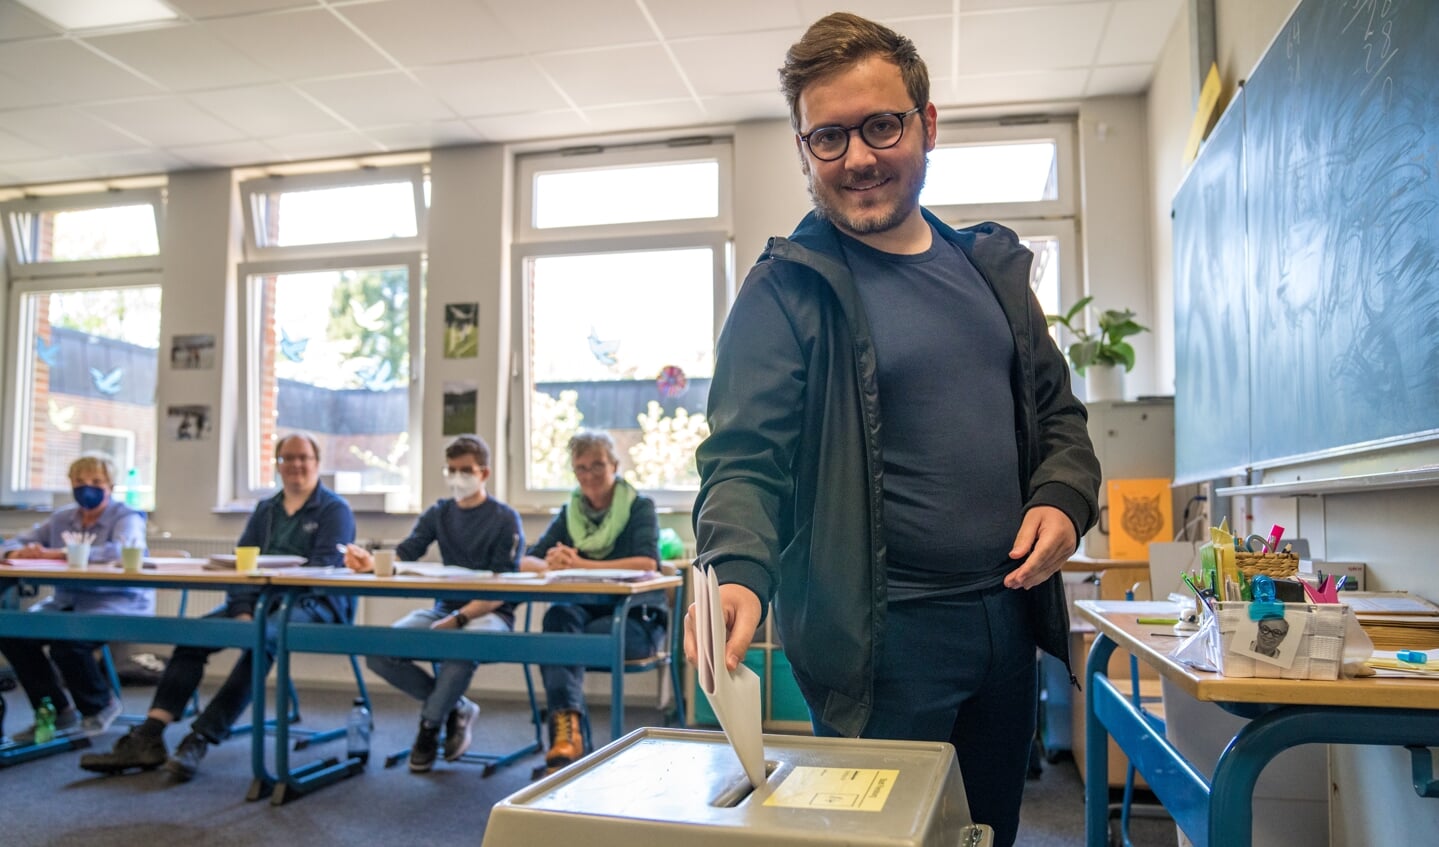 Søndag var det anden gang, at 21-årige Mats Rosenbaum stemte til landdagsvalget. 